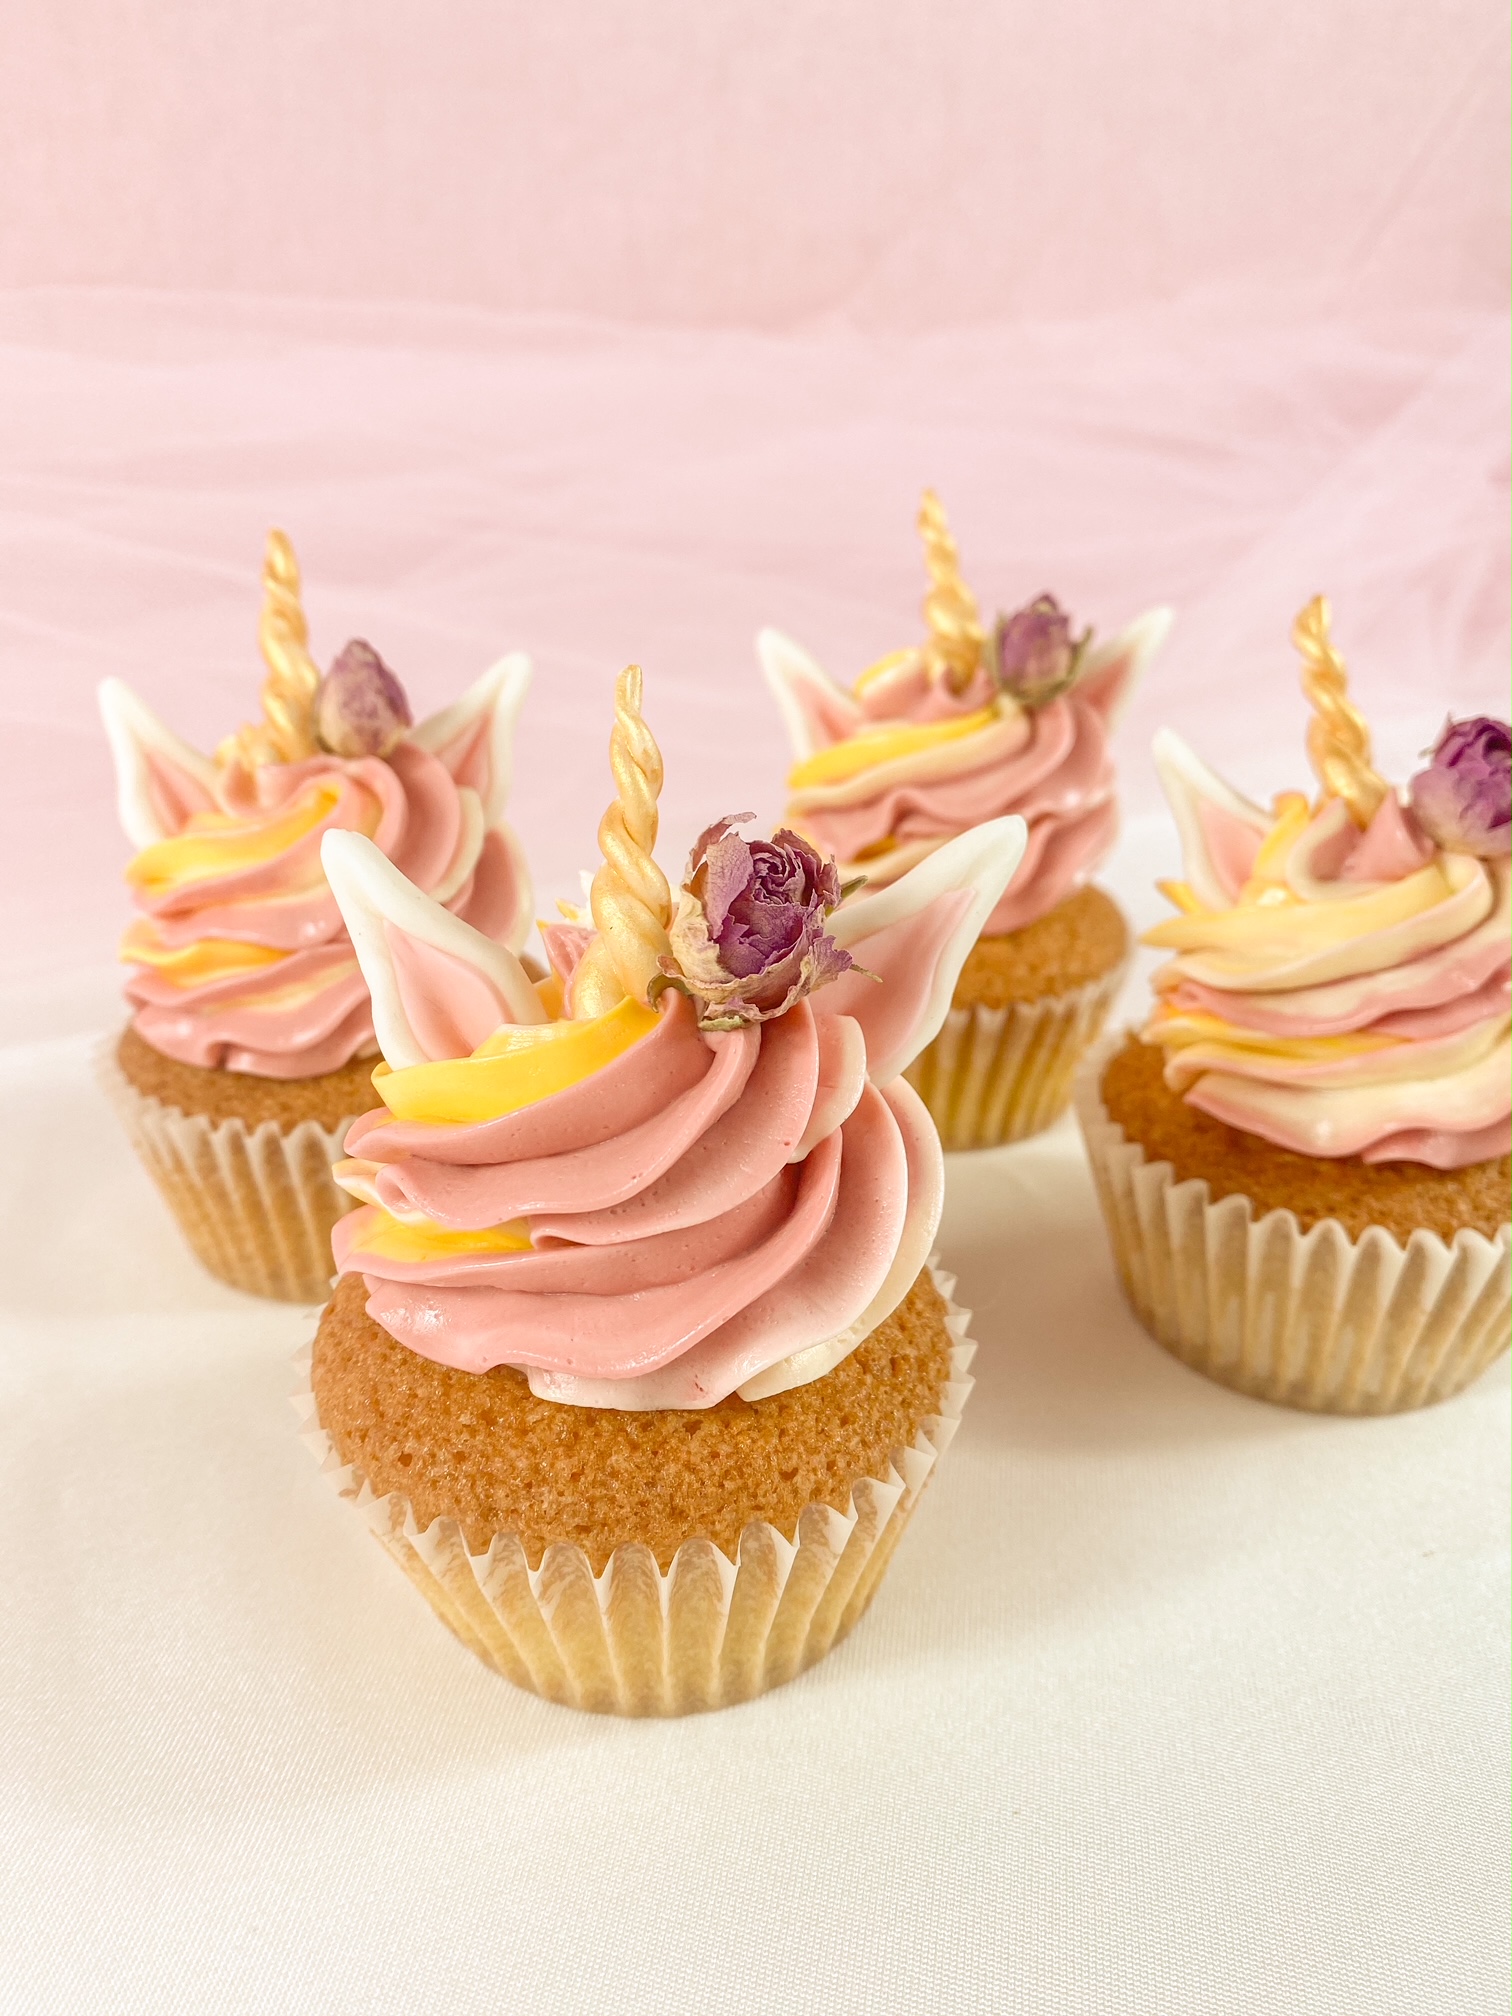 Cupcake Compleanno bimba - Cake e Biscotti